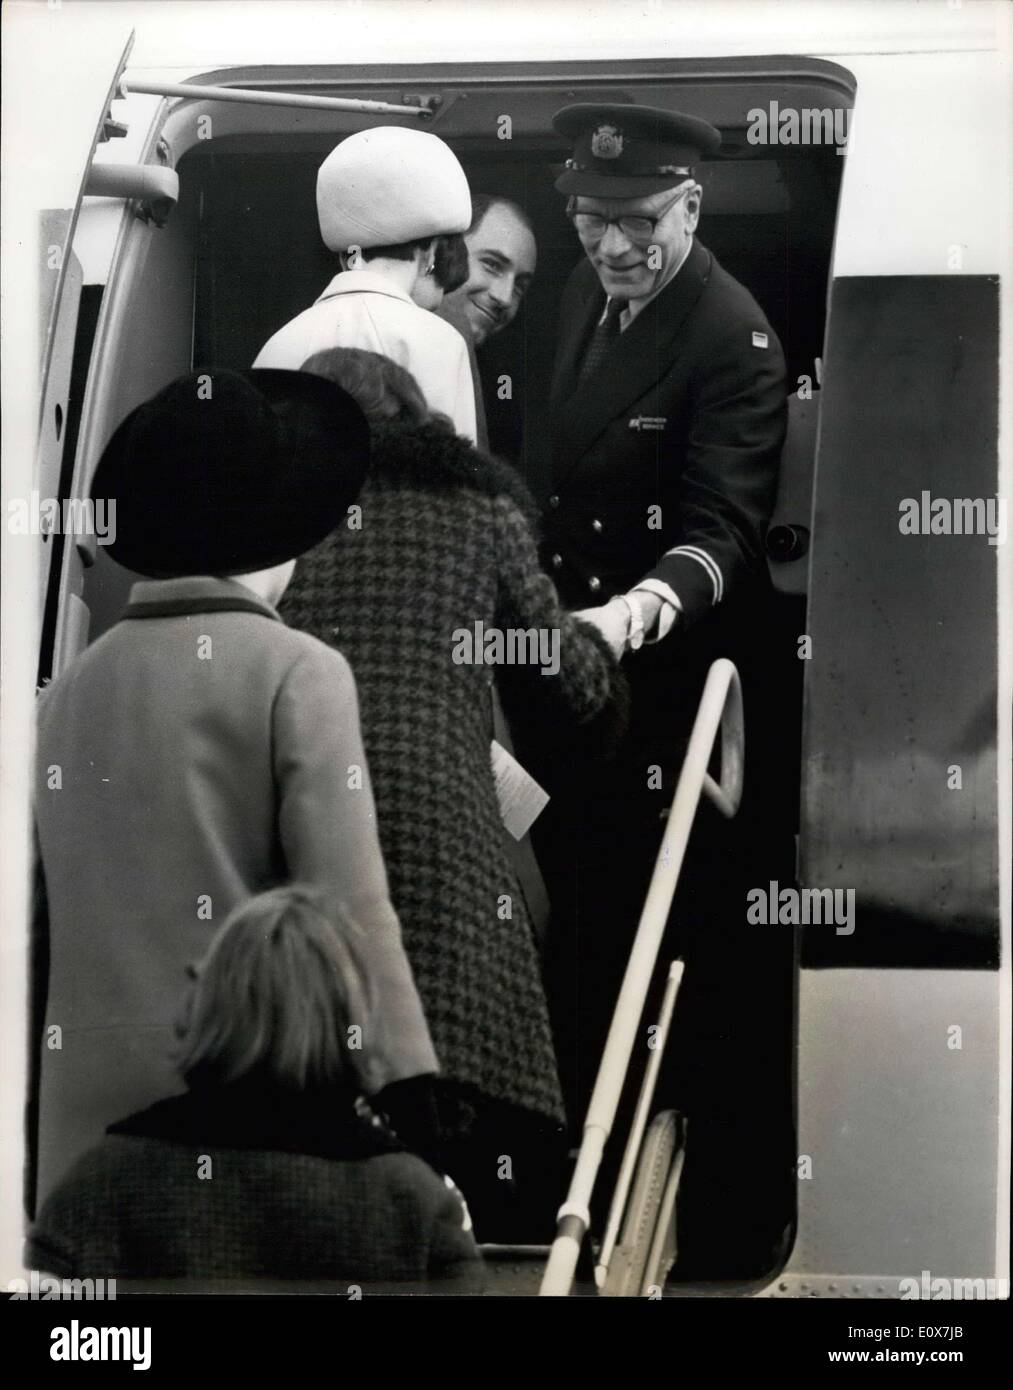 Septembre 06, 1965 - Monsieur Laurence Bienvenue à bord de ses collègues artistes ; Sir Laurence Olivier gauche hier l'aéroport de Londres avec le National Theatre company pour Moscou. Monsieur Laurence a réussi à être la première à bord de l'avion, et avant le 62 d'autres gens de théâtre s'est l'allée qu'il avait emprunté le chapeau tressé d'or et de l'enveloppe du délégué syndical en chef de l'avion, et a souhaité la bienvenue à ses collègues artistes à bord. Photo Show Sir Laurence Olivier dans l'uniforme d'un Airwayd européenne britannique délégué en chef, se félicitant de ses collègues artistes à bord de l'avion, avant de partir pour Moscou hier. Banque D'Images